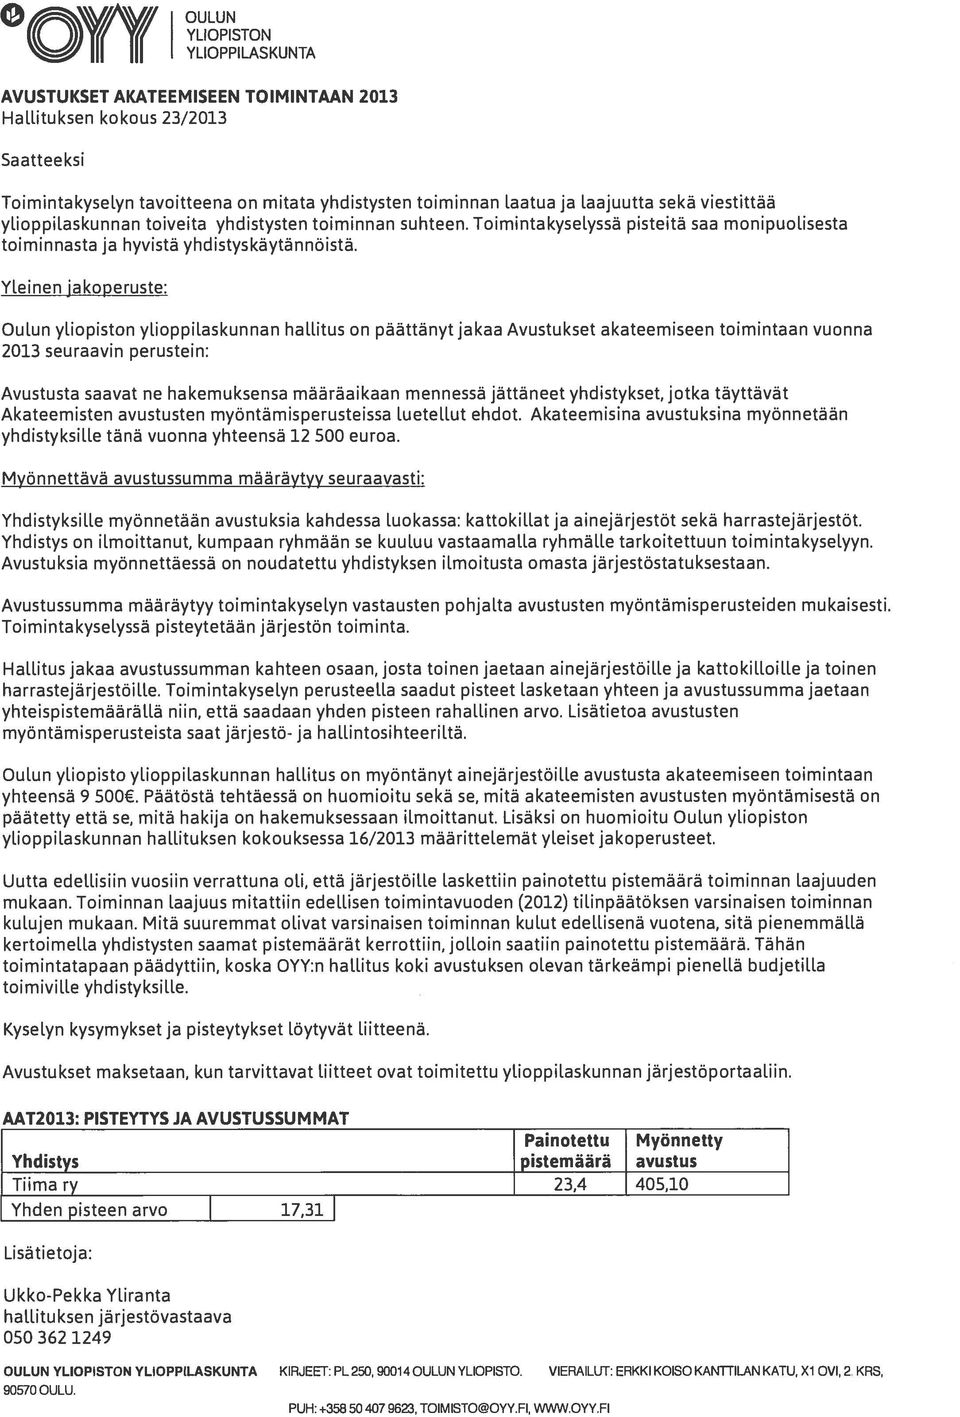 Yleinen jakoperuste: Oulun yliopiston ylioppilaskunnan hallitus on päättänyt jakaa Avustukset akateemiseen toimintaan vuonna 2013 seuraavin perustein: Avustusta saavat ne hakemuksensa määräaikaan